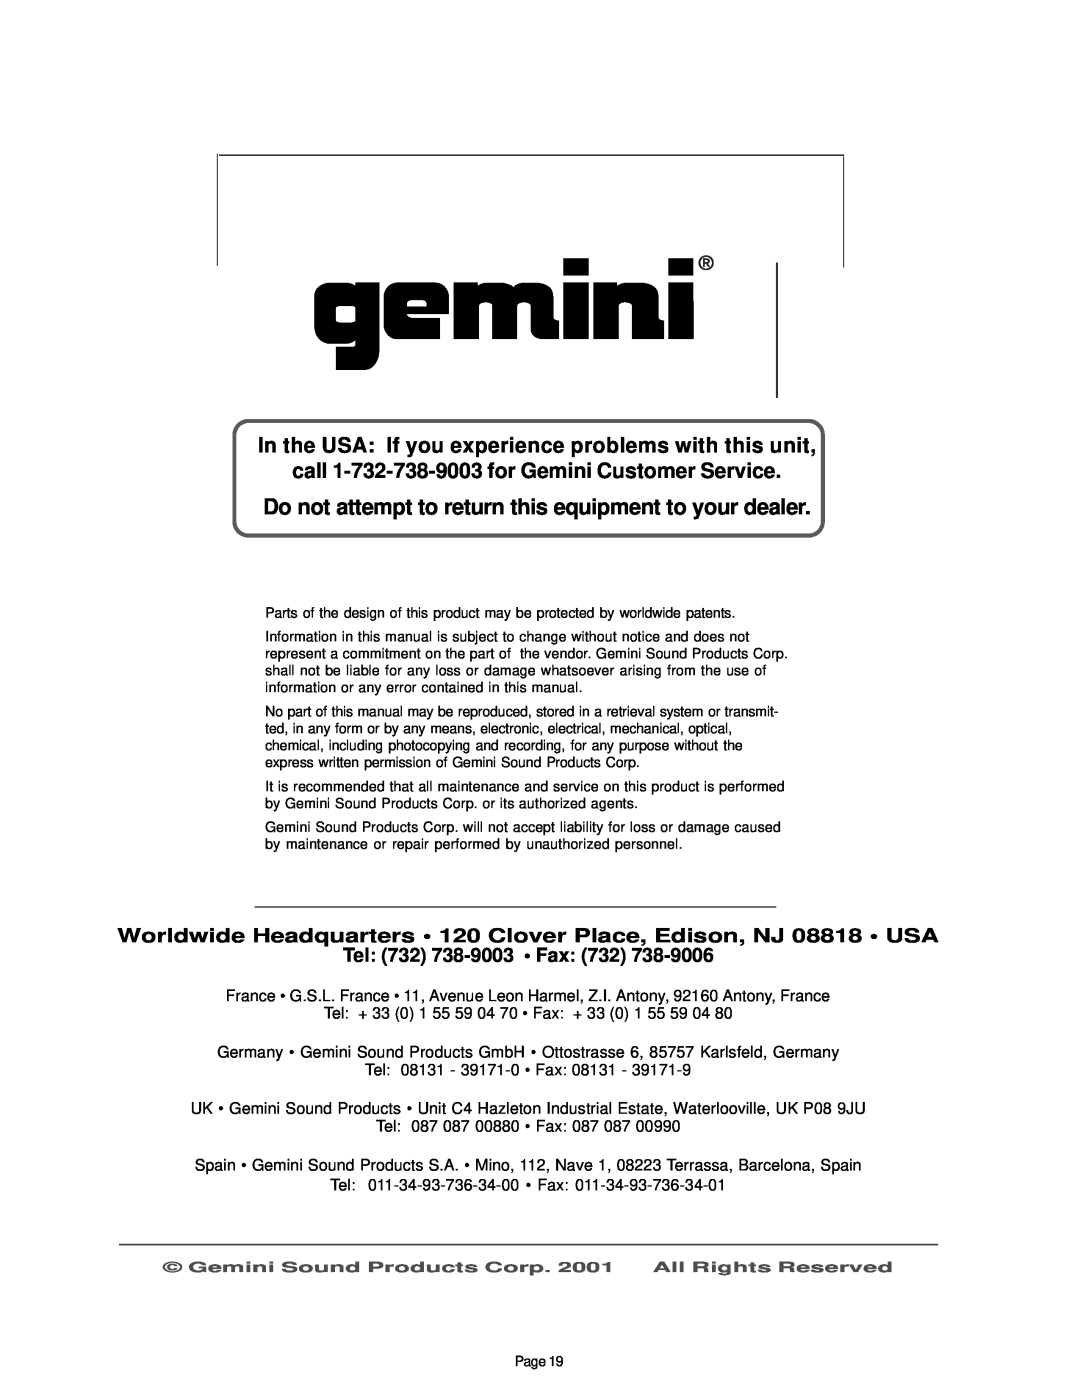 Gemini CD-340 manual Tel: 732 738-9003• Fax: 732, call 1-732-738-9003for Gemini Customer Service 